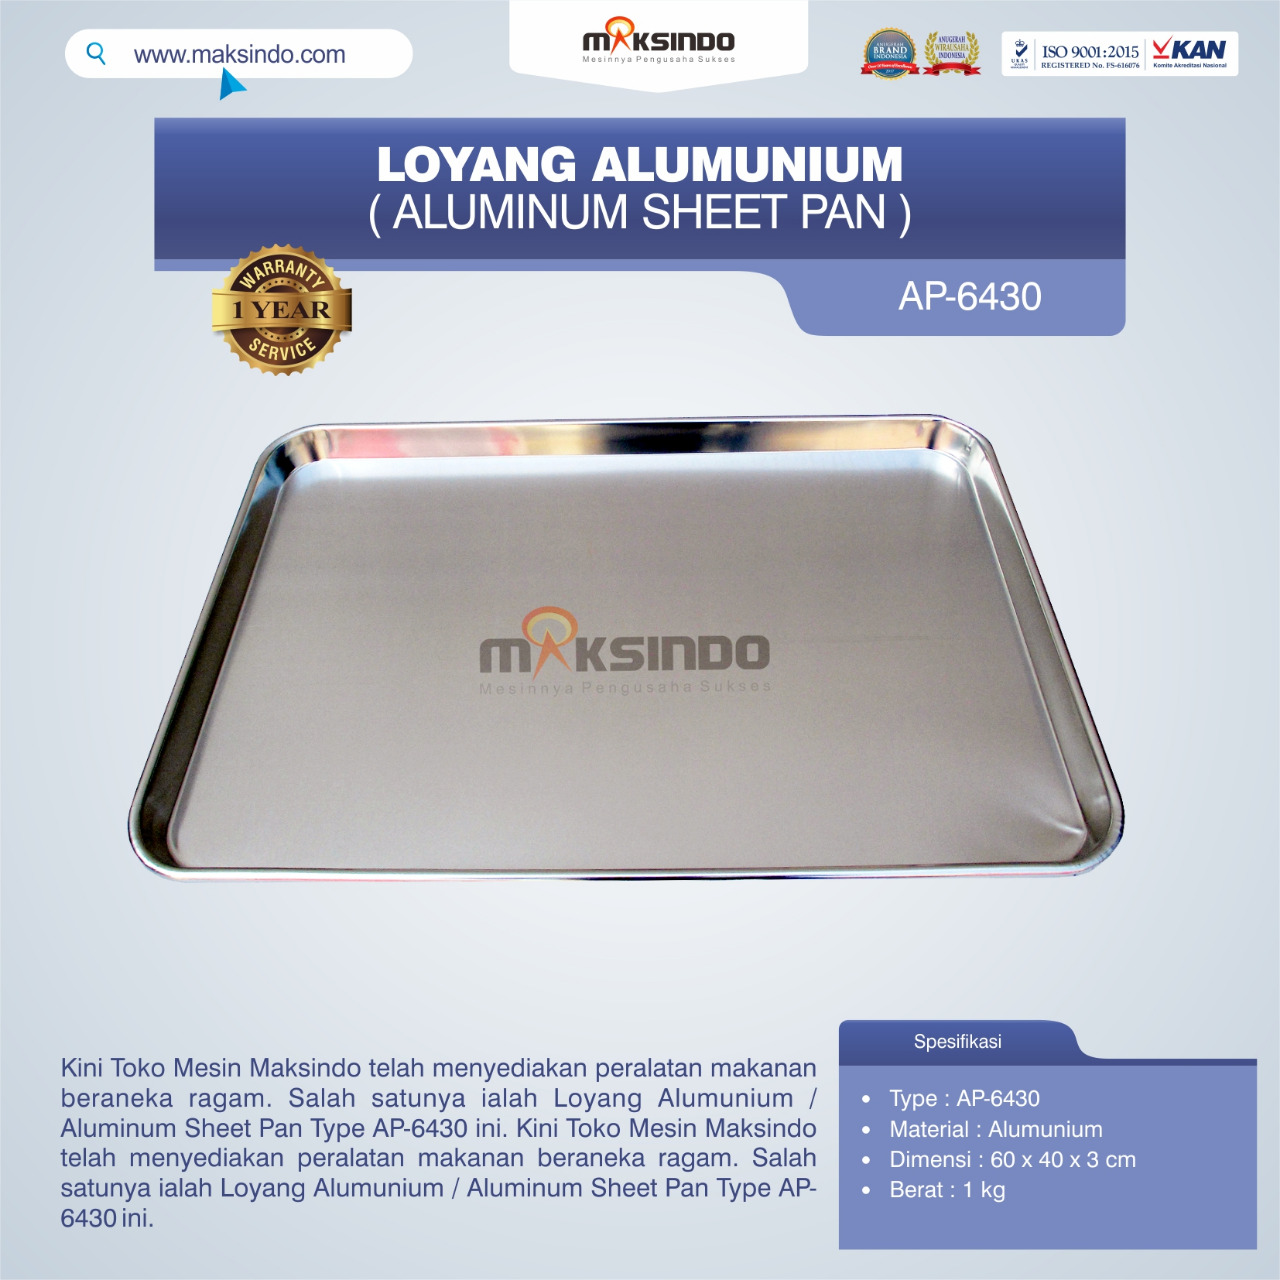 Jual Loyang Alumunium / Aluminum Sheet Pan Type AP-6430 di Palembang